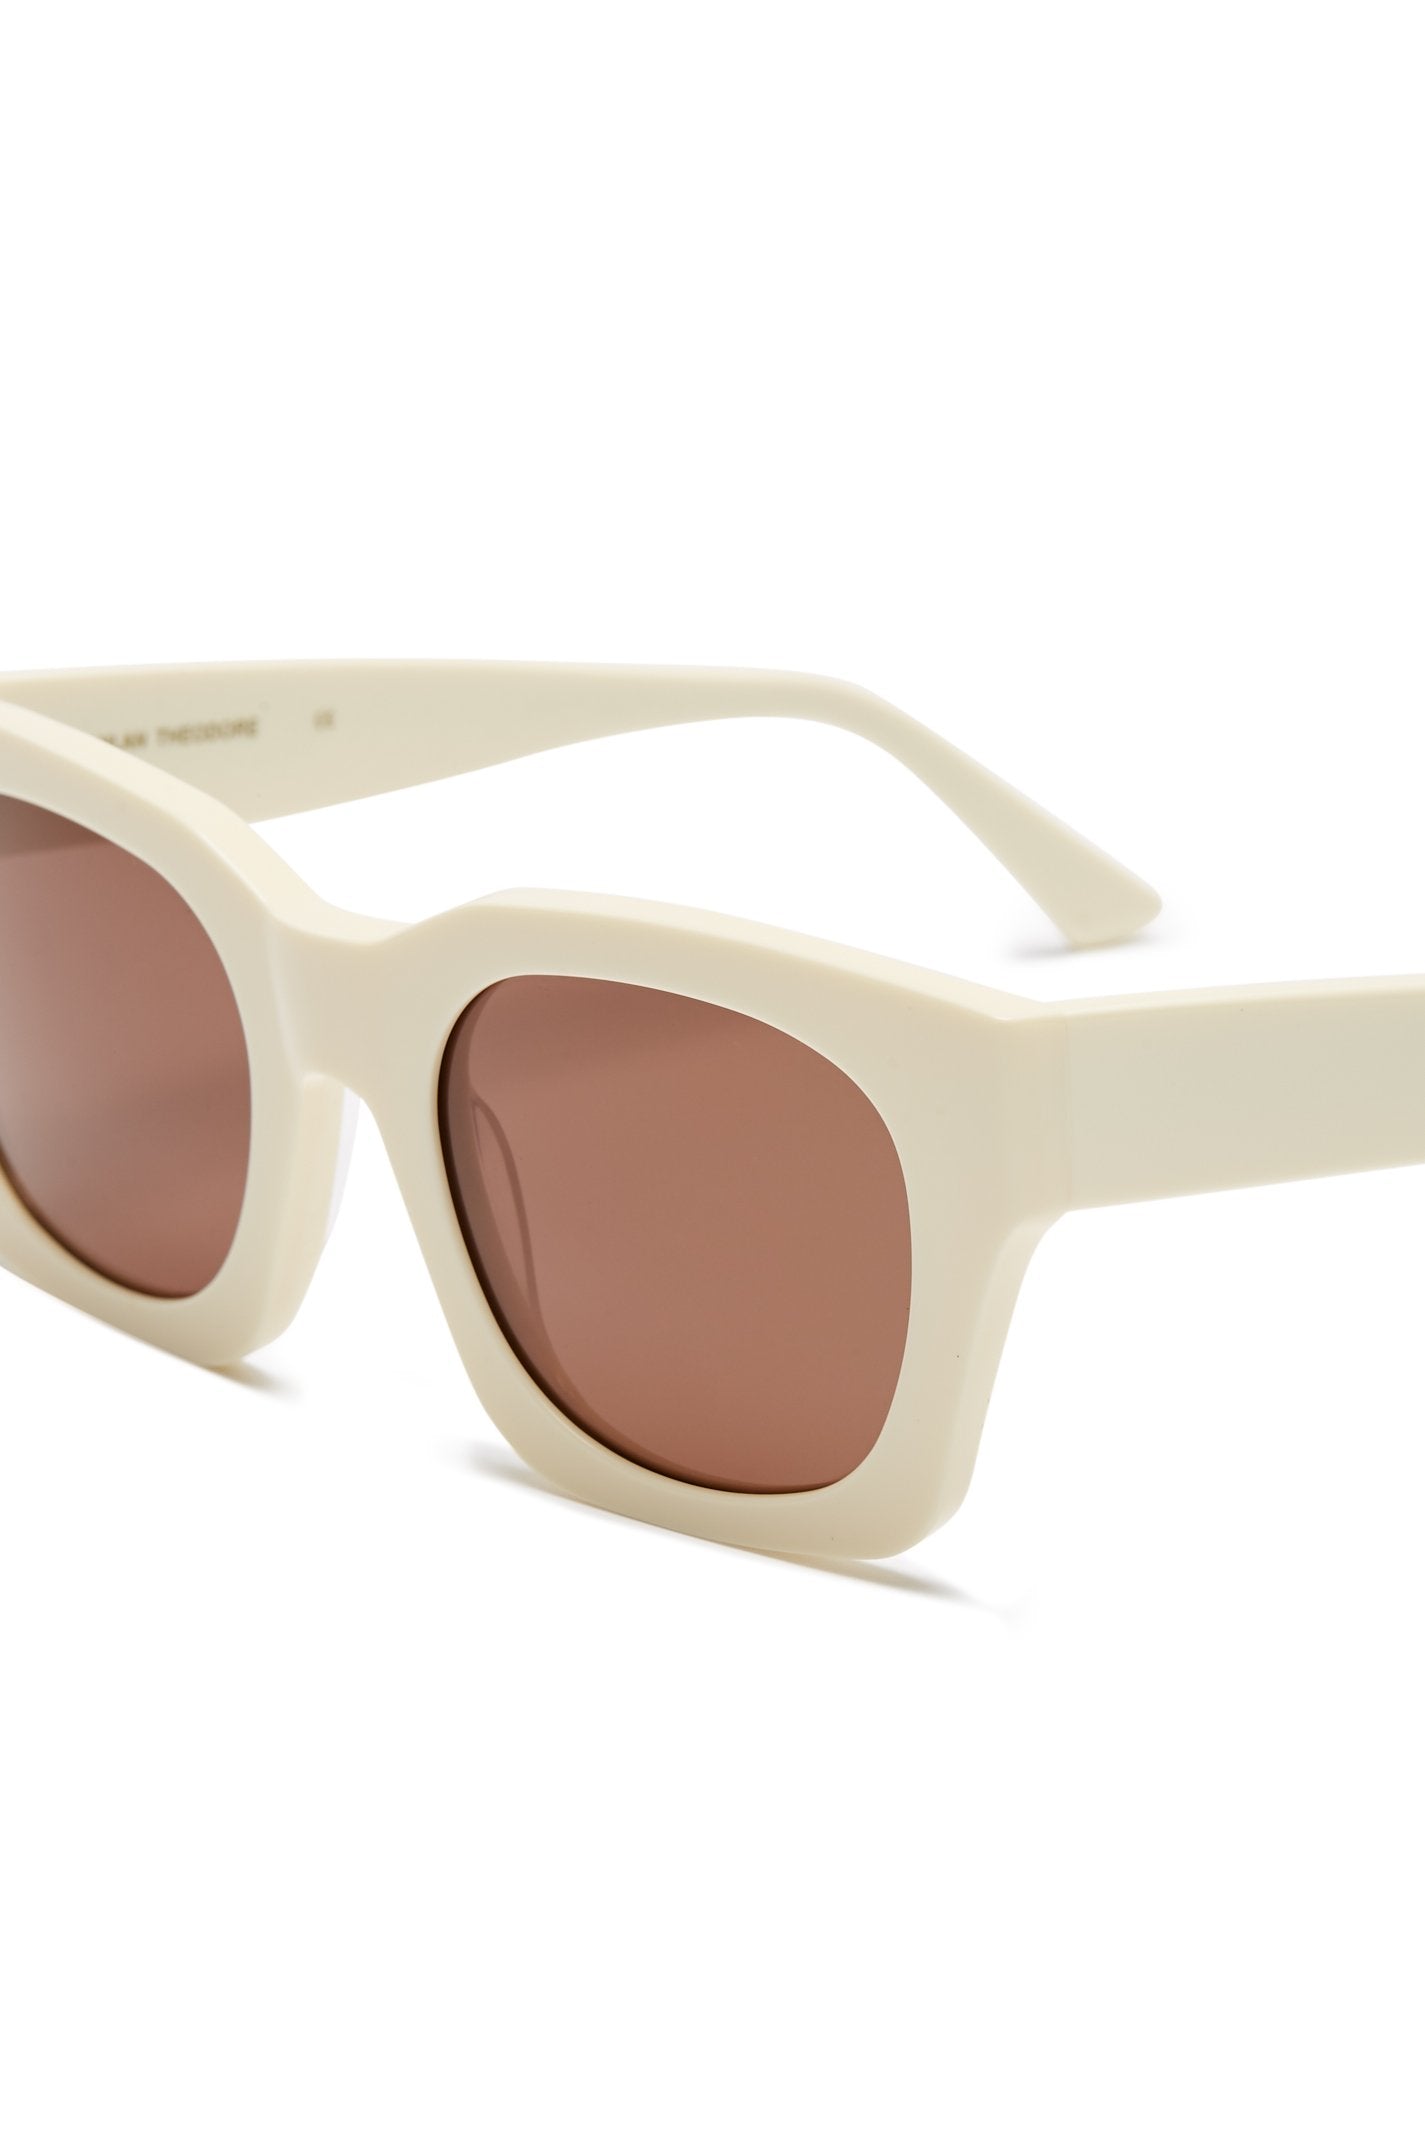 Premium Sunglasses for the Australian Lifestyle – Glasses Ltd